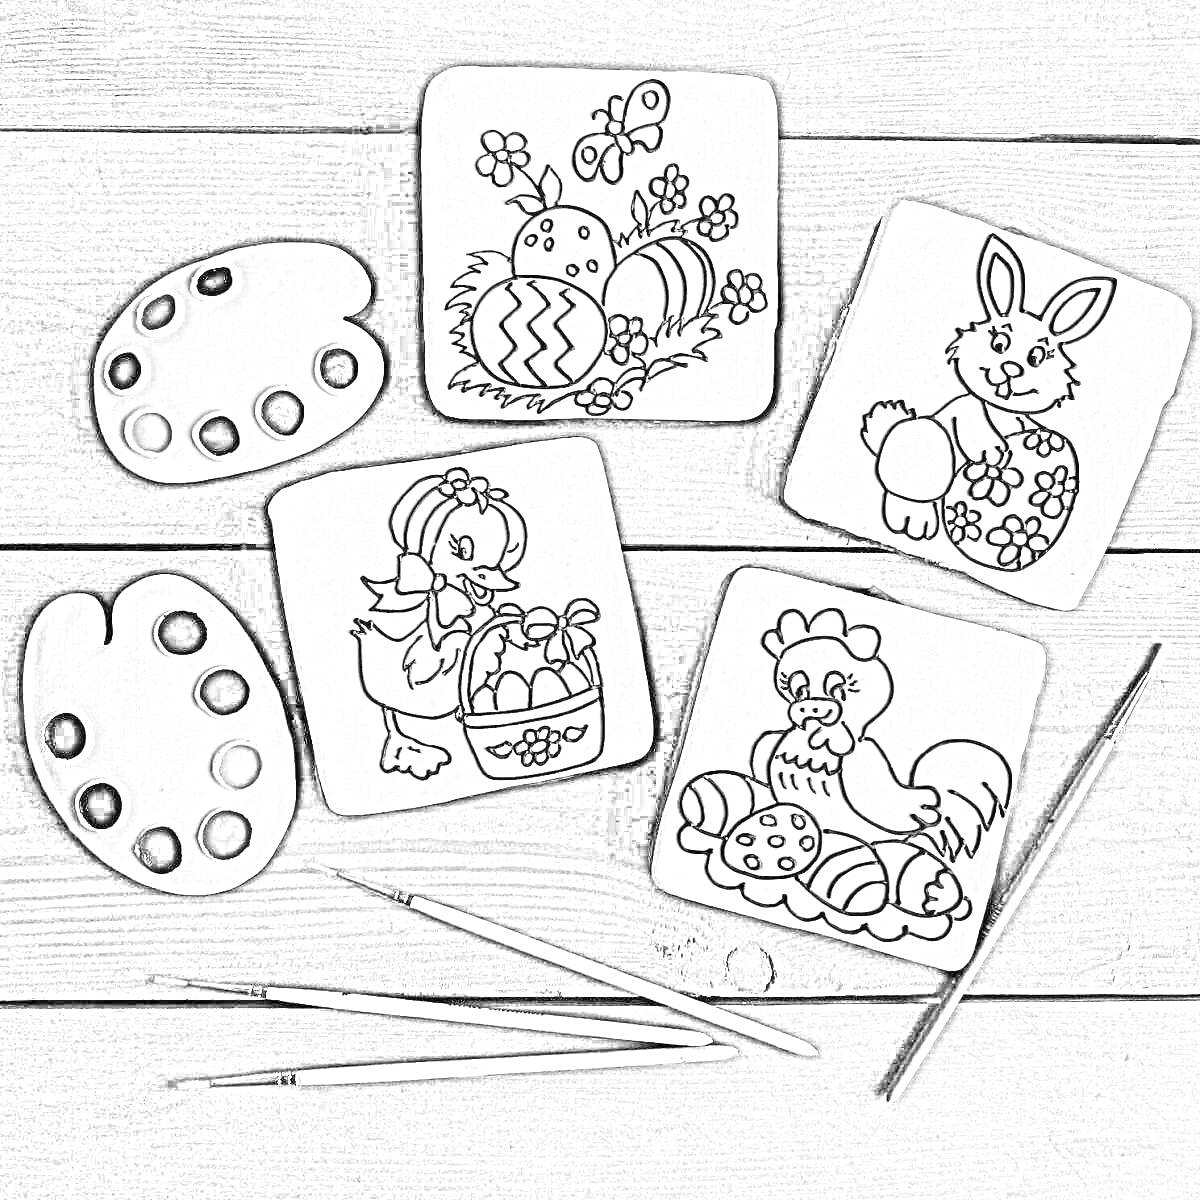 Раскраска раскраска-пряники с изображением пасхального яйца, кролика с цветочком, цыпленка с корзиной, курицы, двух палитр с красками и тремя кисточками на деревянной поверхности